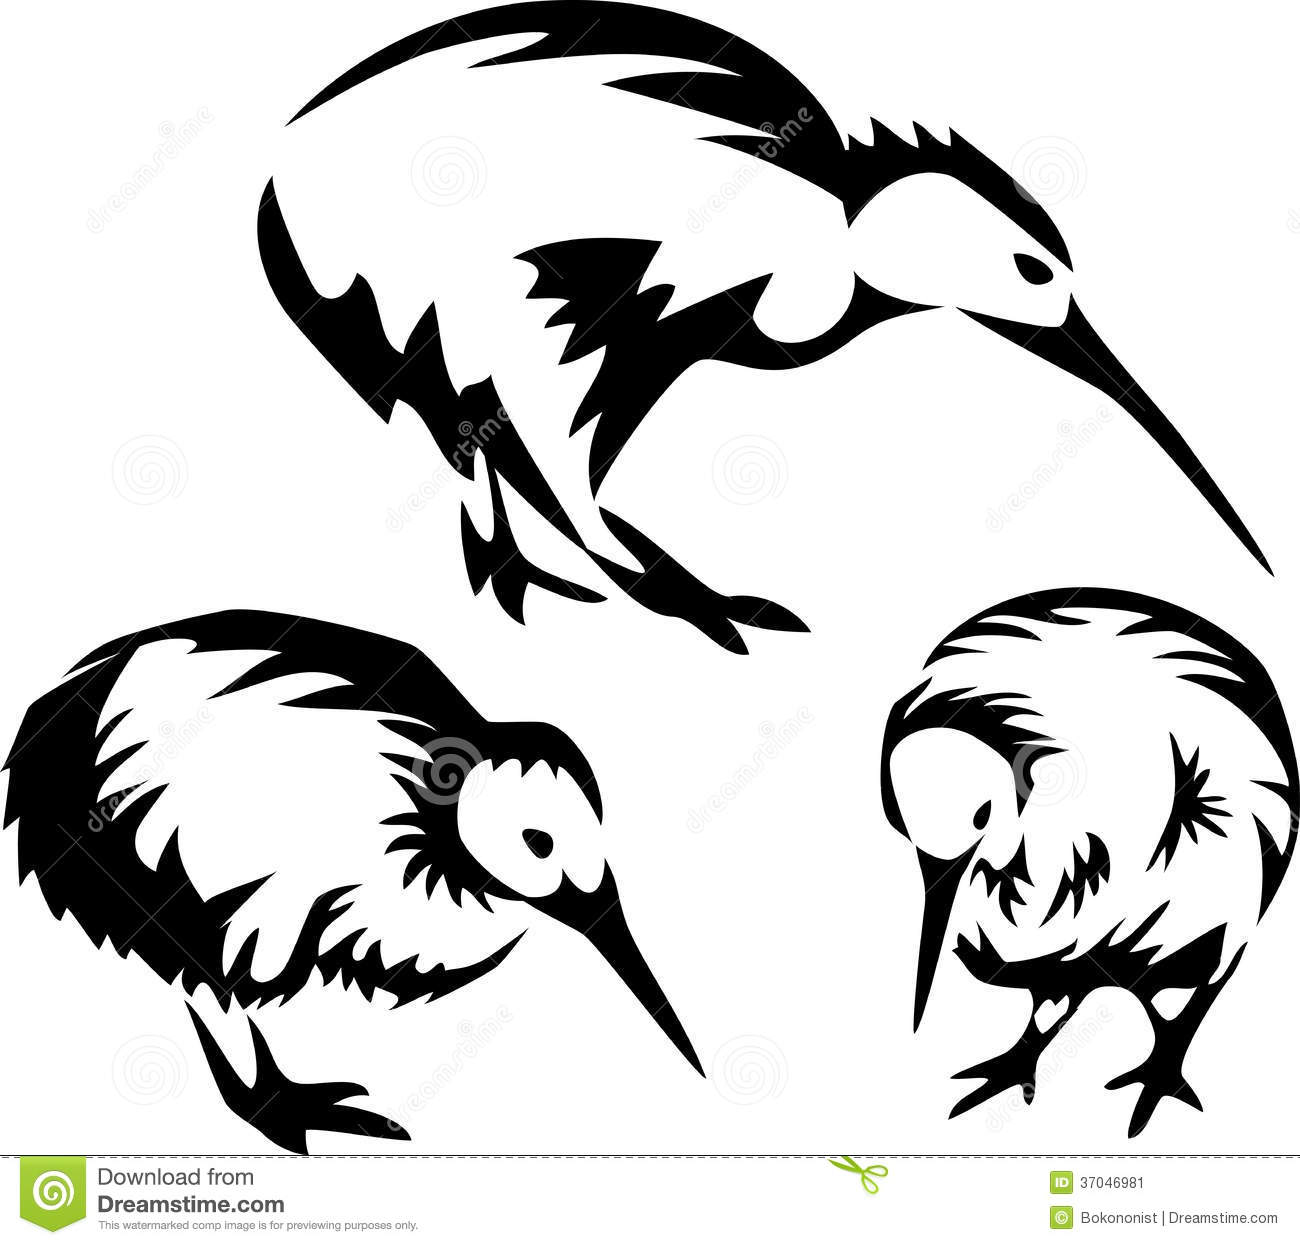 Kiwi Clipart Black And White Kiwi Bird   Stylized Black And